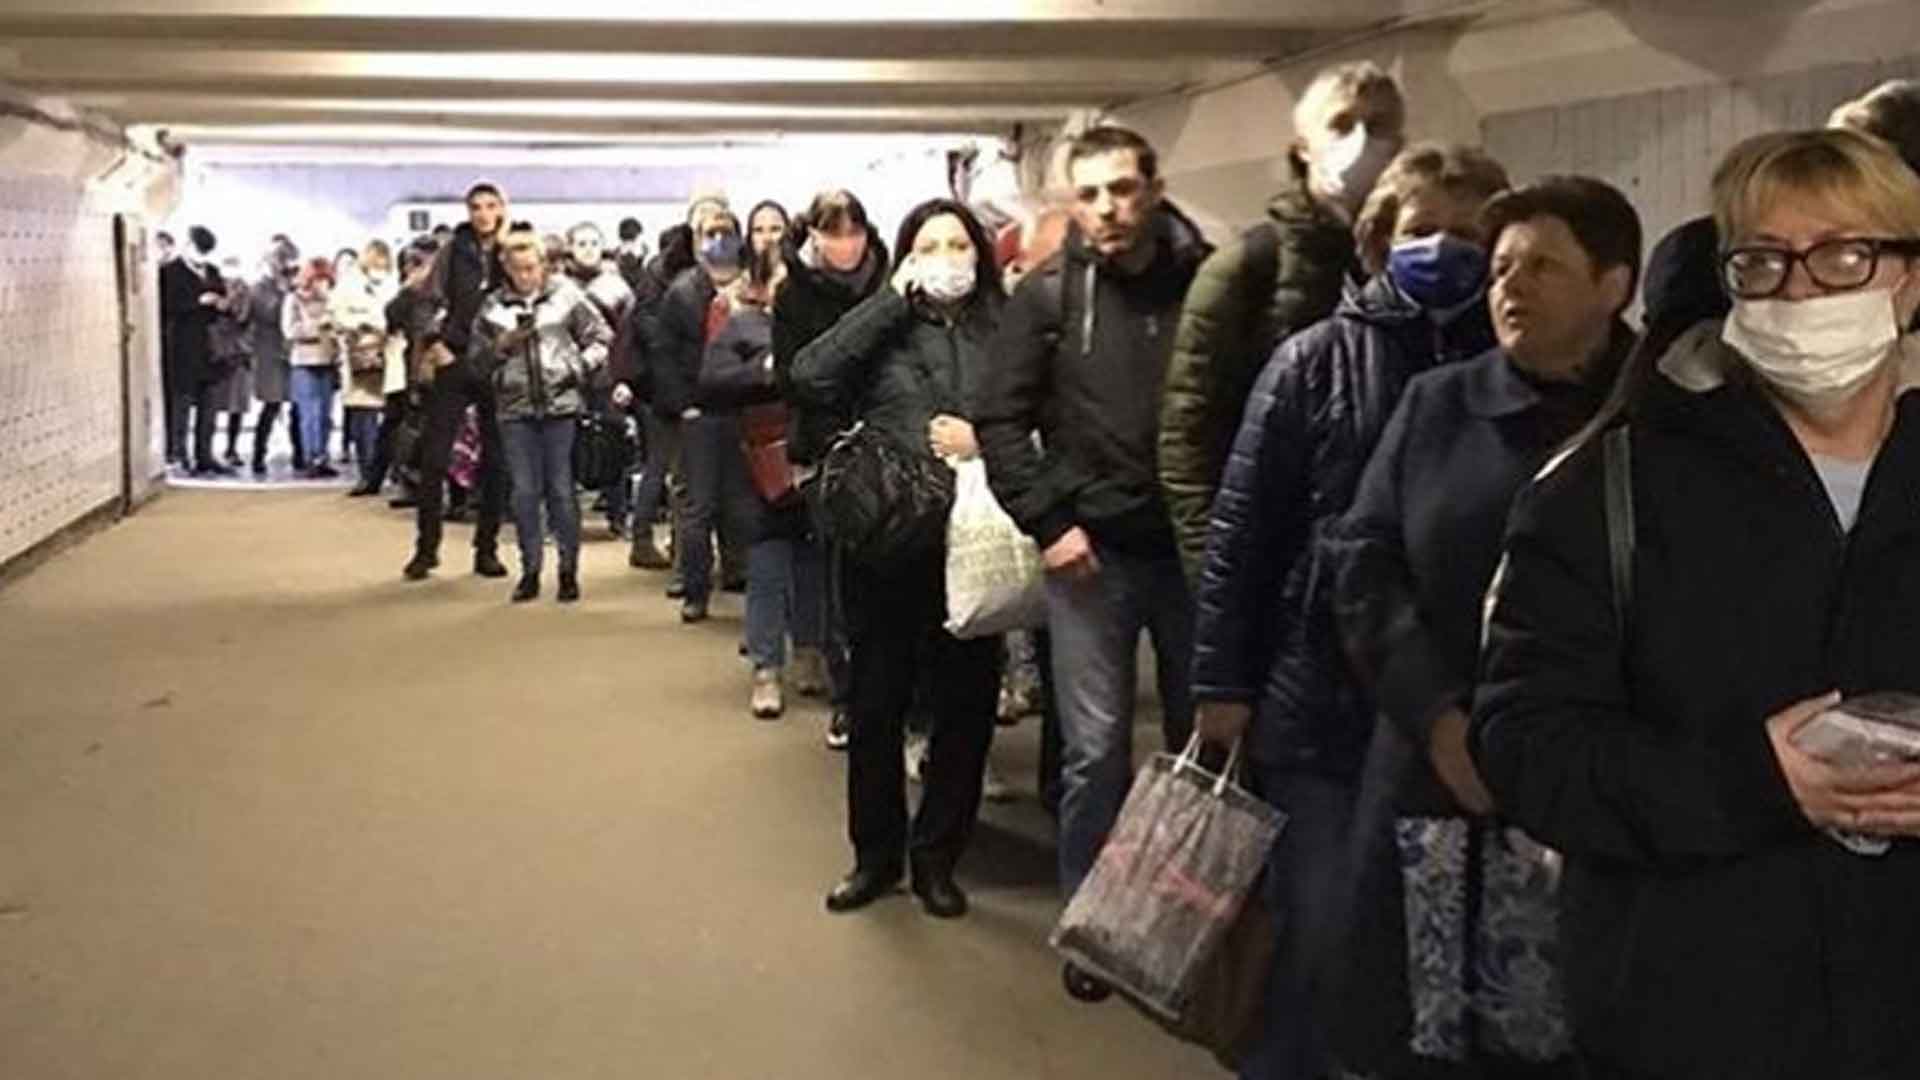 Ранее жители столицы пожаловались, что им пришлось ждать до получаса при входе на станции после введения пропускного режима Фото: © Twitter / Dmitriy